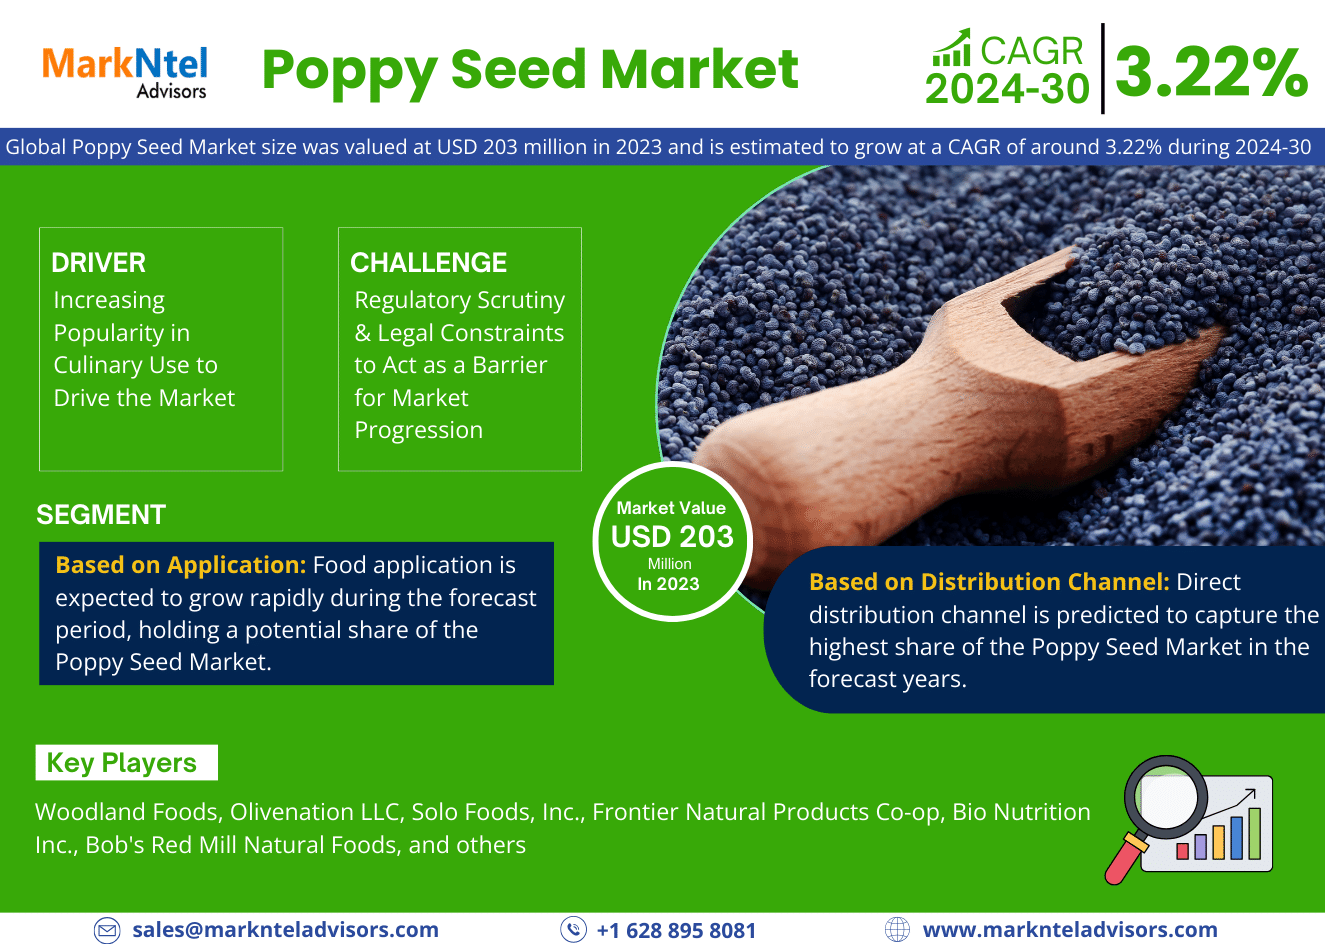 Global Poppy Seed Market